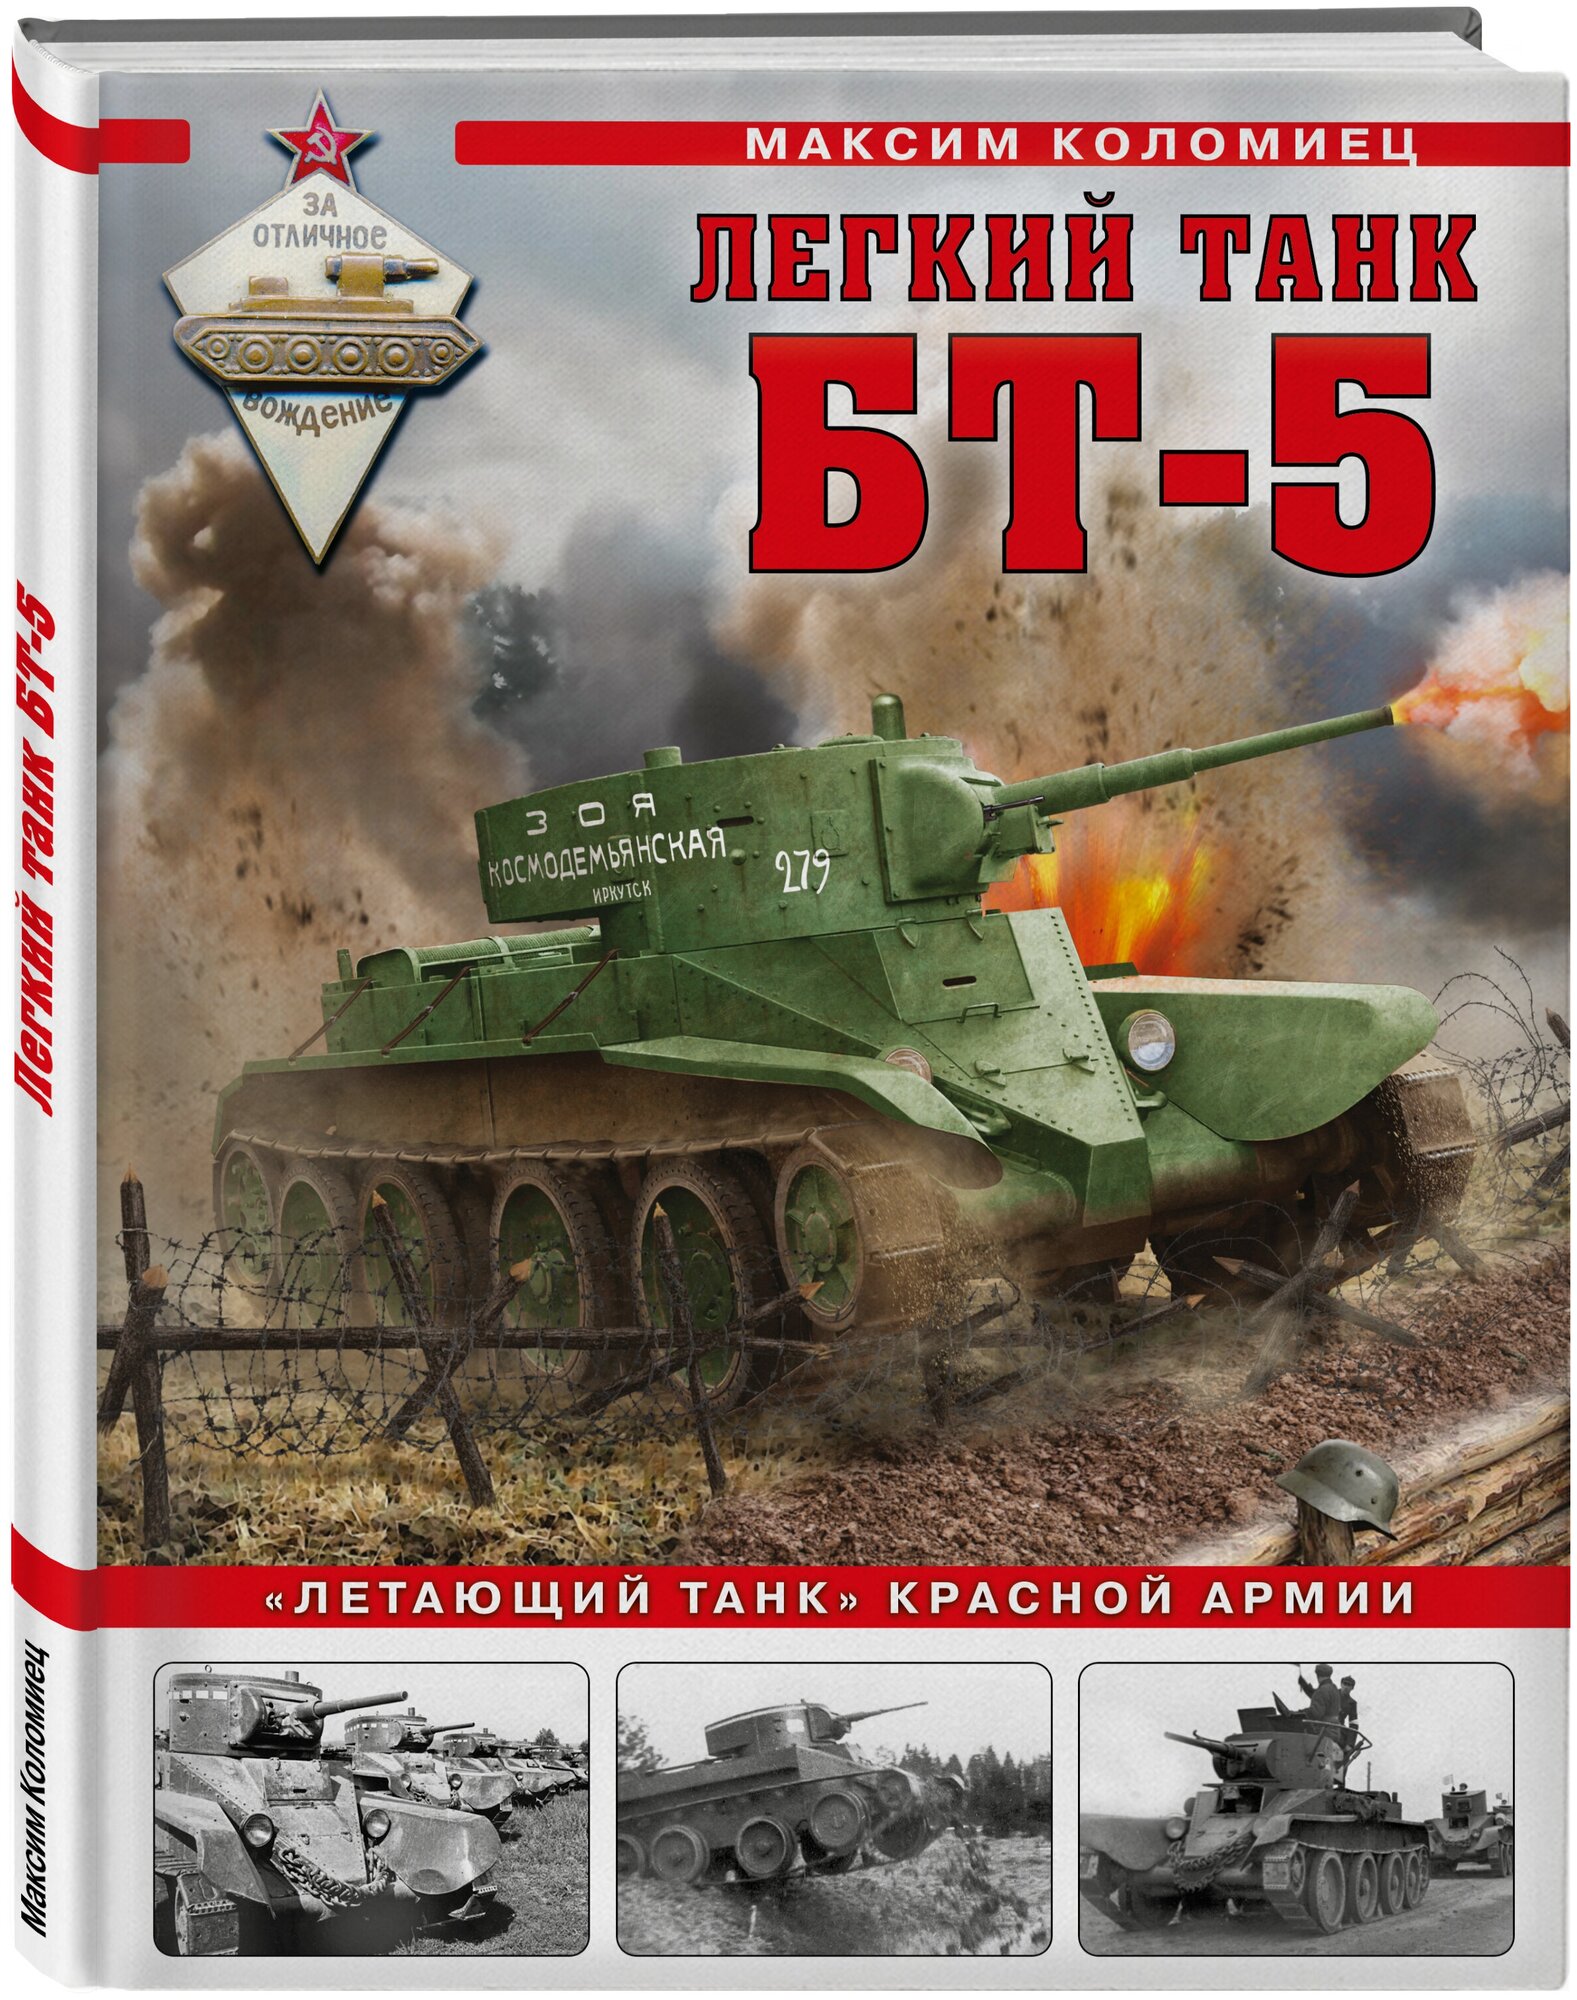 Коломиец М. В. Легкий танк БТ-5. «Летающий танк» Красной Армии